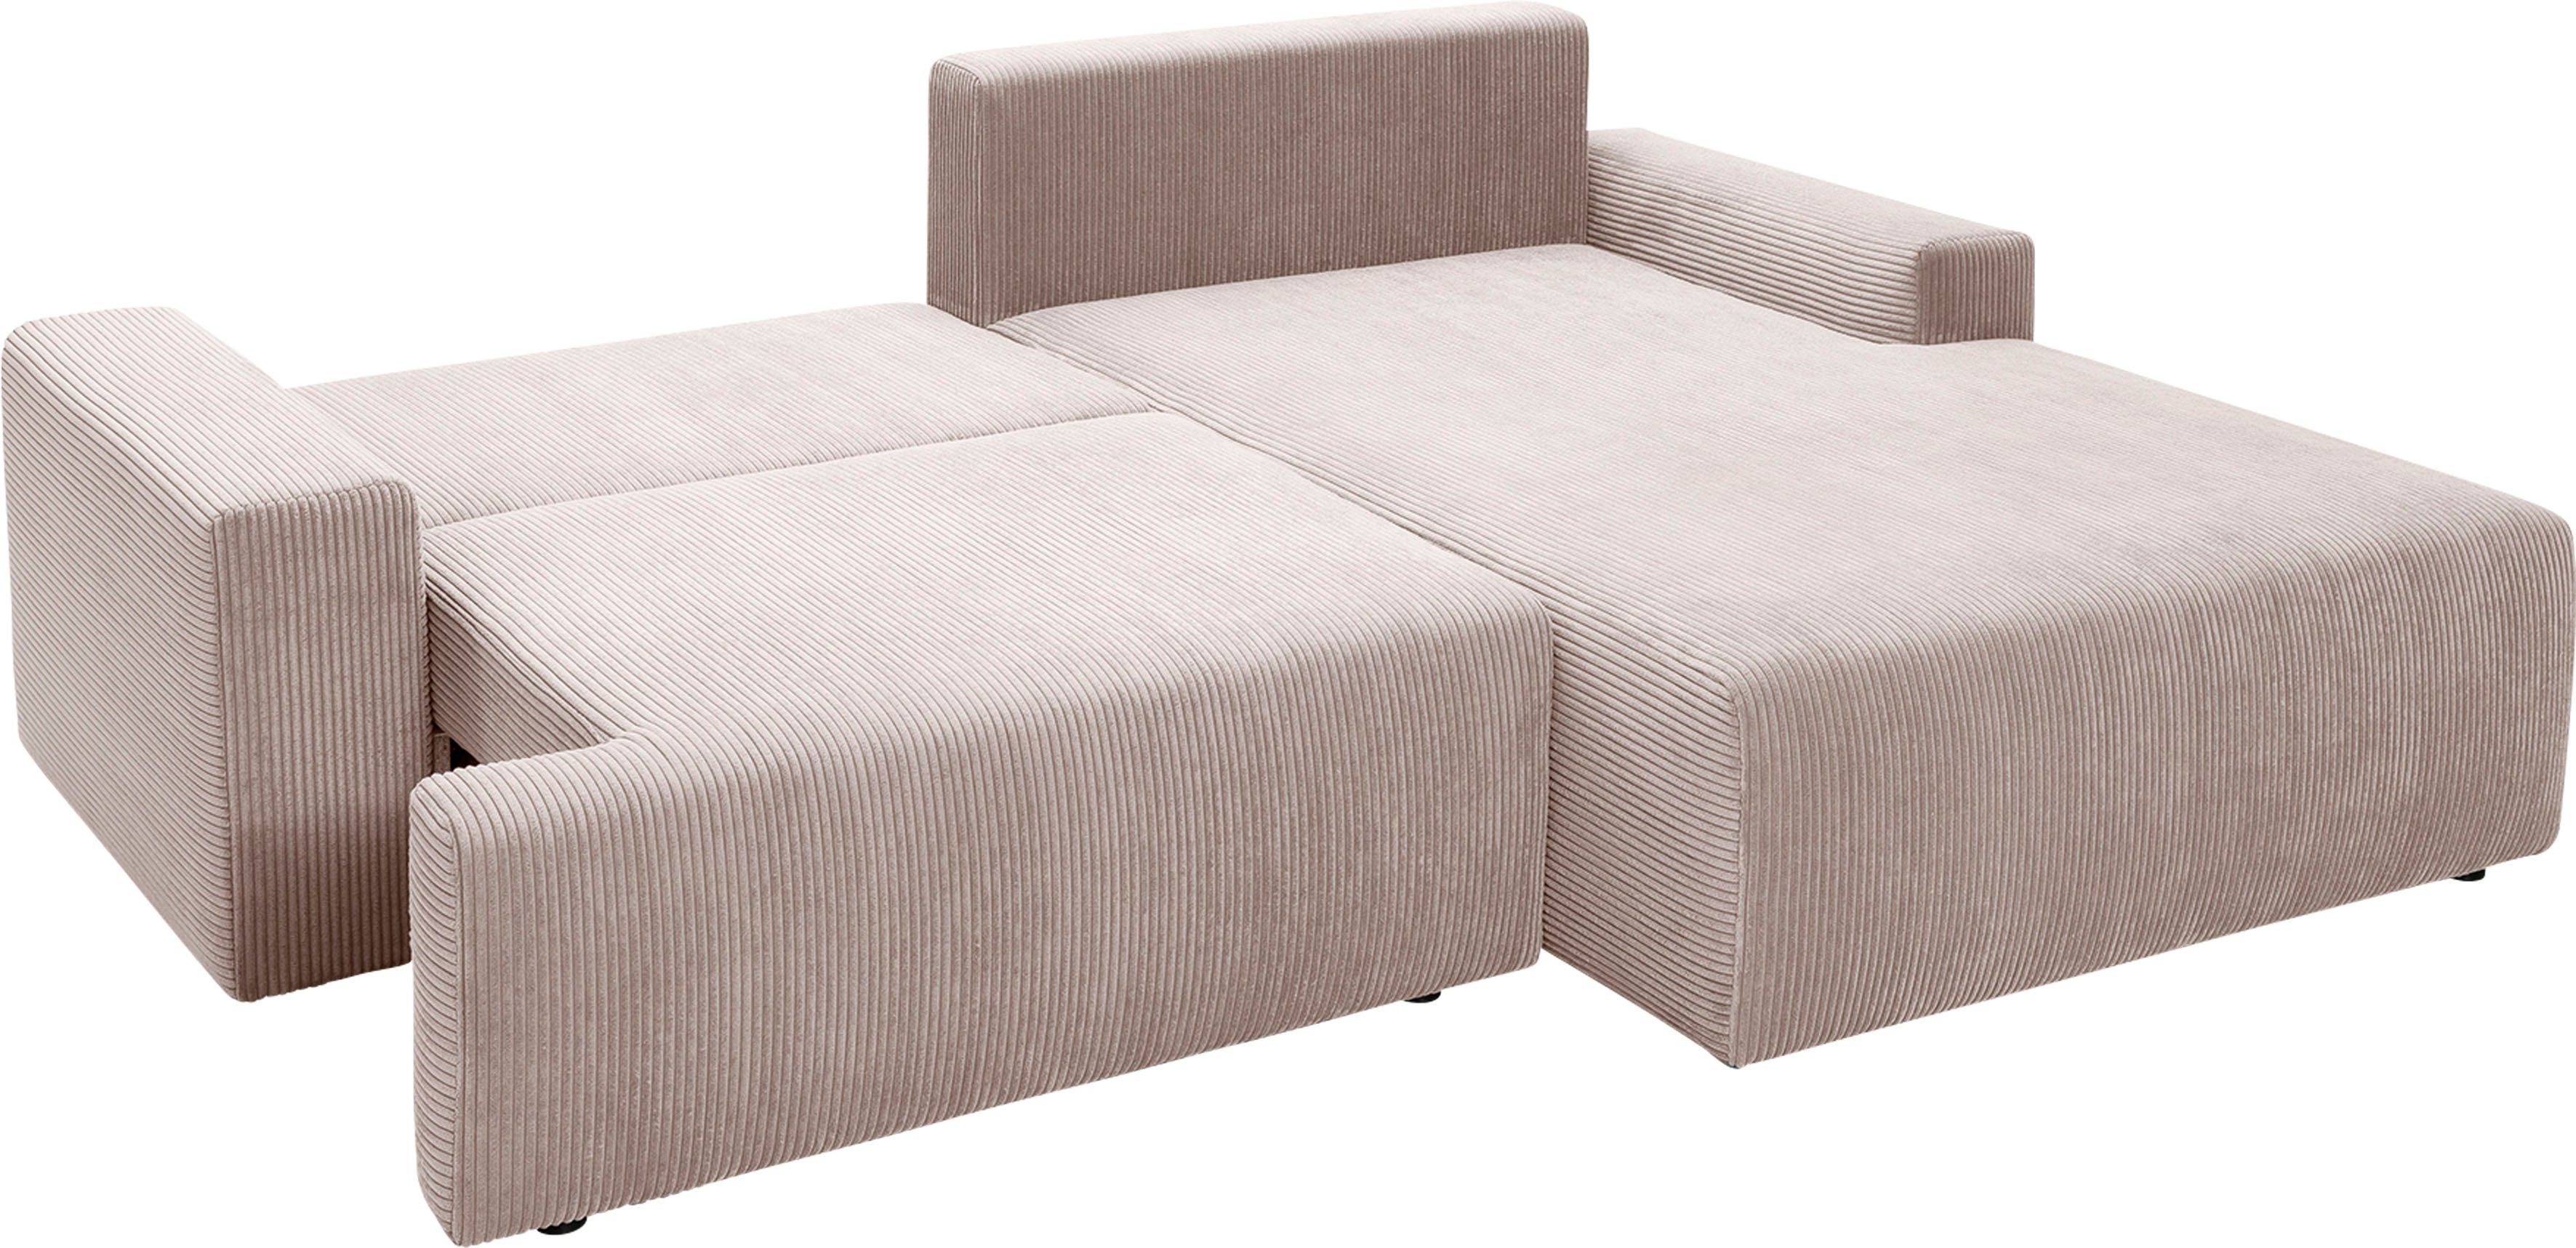 Bettkasten Bettfunktion - Orinoko, in Cord-Farben inklusive verschiedenen Ecksofa sofa biege fashion und exxpo